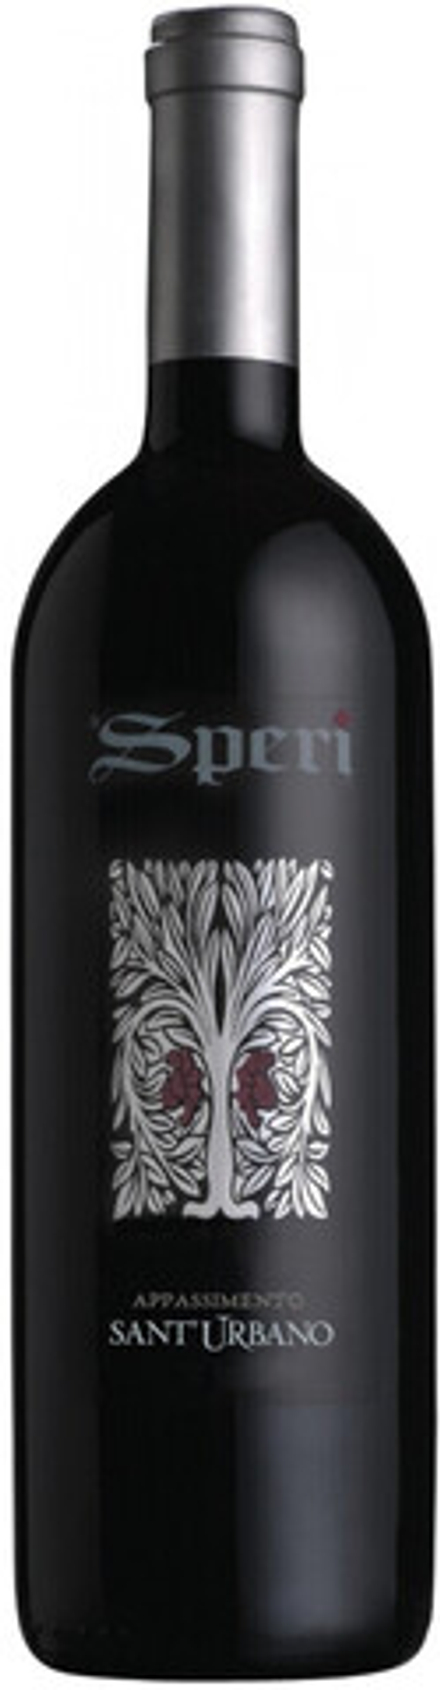 Вино Speri Valpolicella Classico Superiore Sant’Urbano, 0,75 л